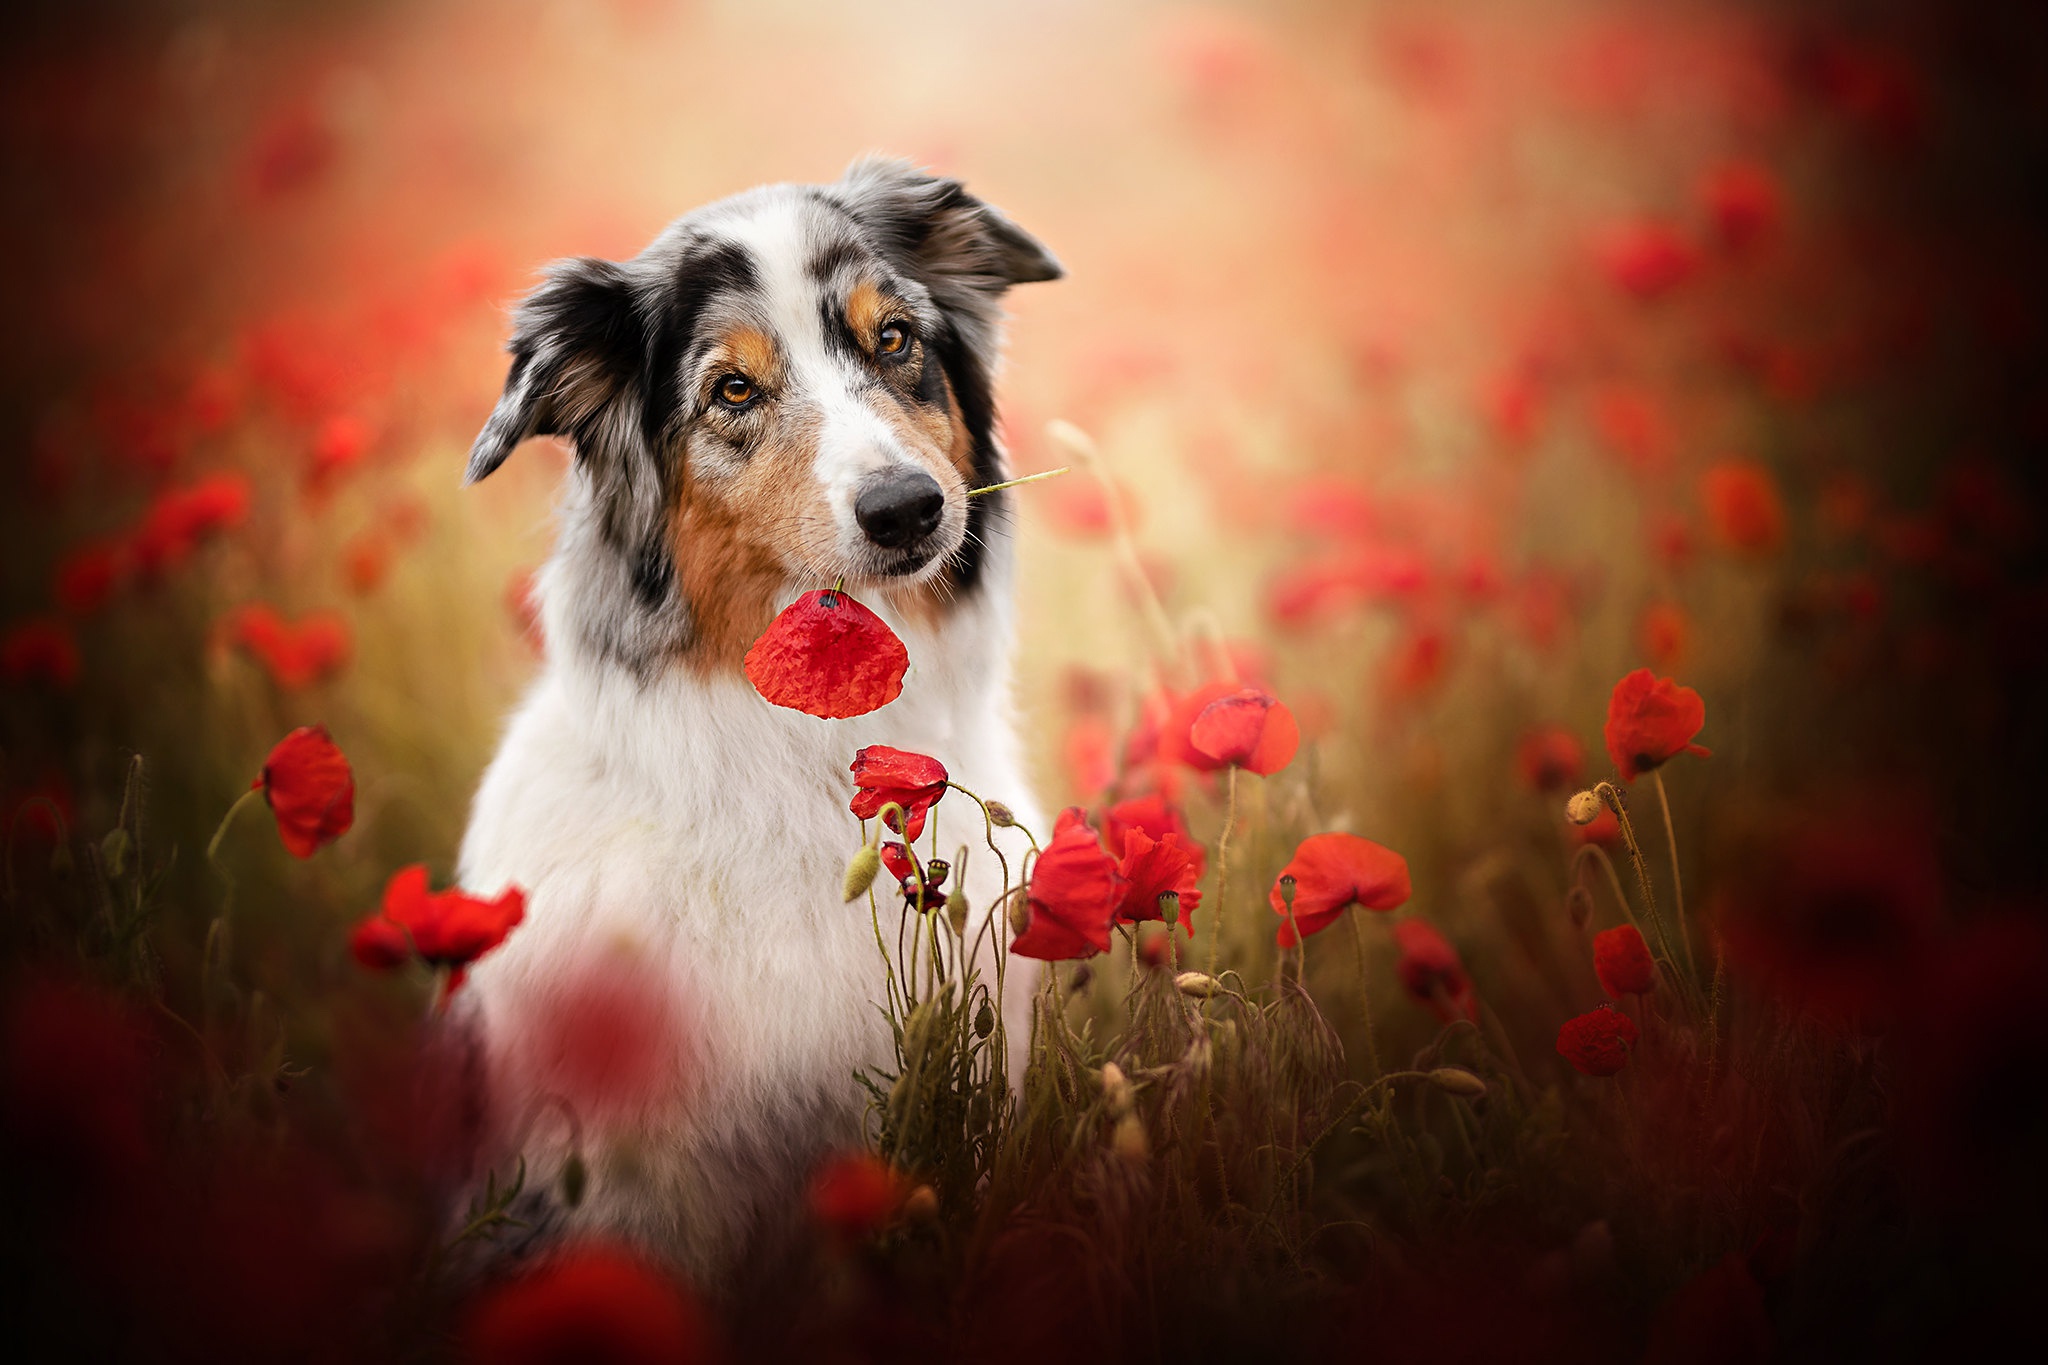 Download mobile wallpaper Dogs, Dog, Animal, Australian Shepherd, Poppy, Red Flower for free.